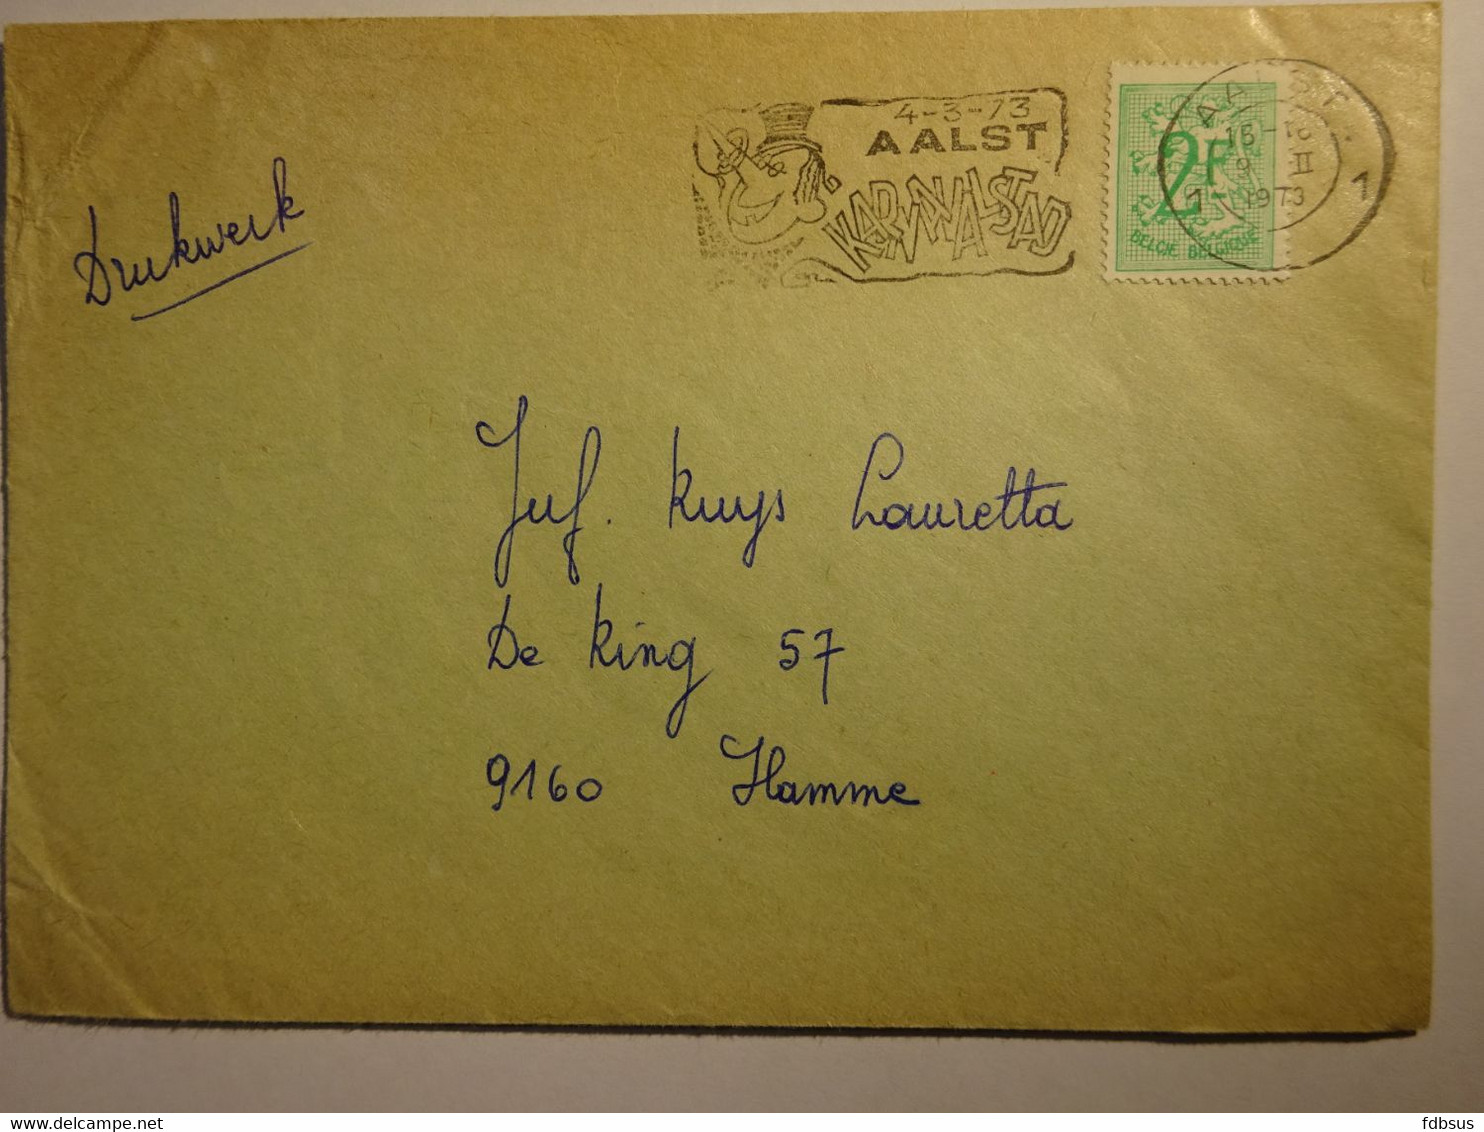 1973 Enveloppe Van AALST Naar Hamme - Gefr. 2 Fr + Mooie Stempel Met Toeristische 4-3-73 AALST KARNAVALSTAD - 1977-1985 Cijfer Op De Leeuw